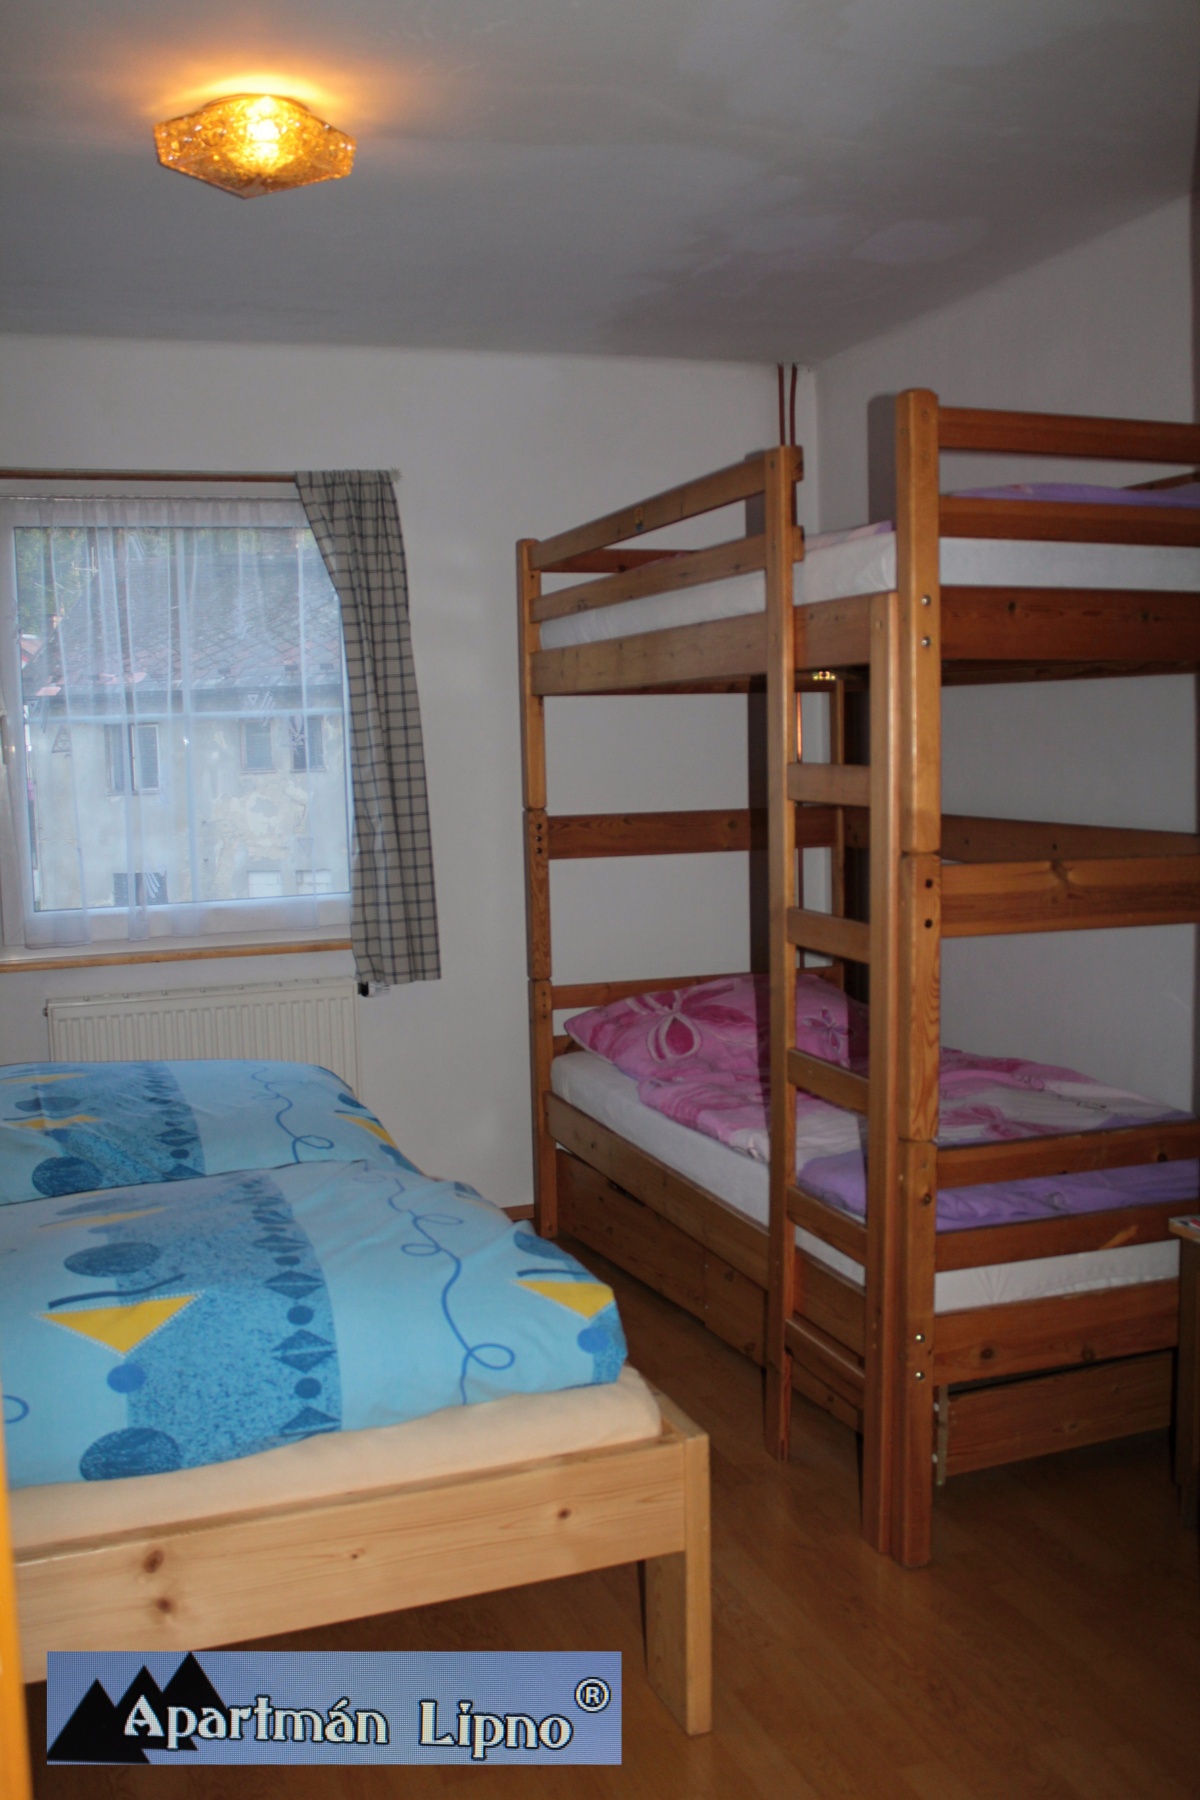 Apartmán Lipno ubytování v soukromí přehrada Lipno ideální pro rodiny s dětmi a skupiny ve dvou apartmá každé do 7 os. 2 A.-14 os.